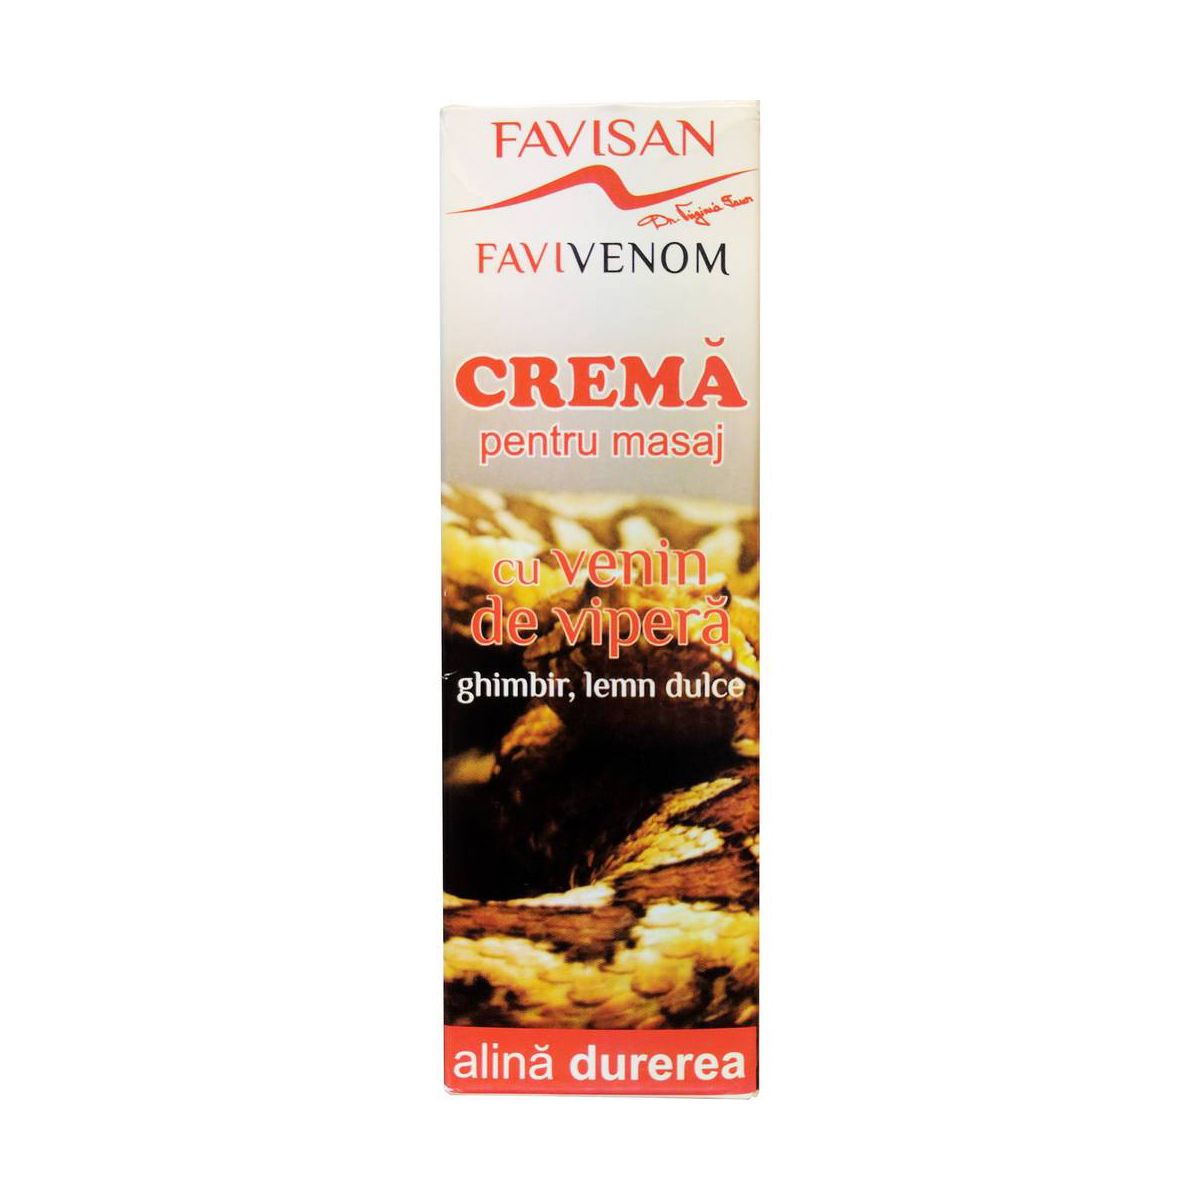 Crema pentru masaj cu venin de vipera, Favivenom, 50 ml, Favisan